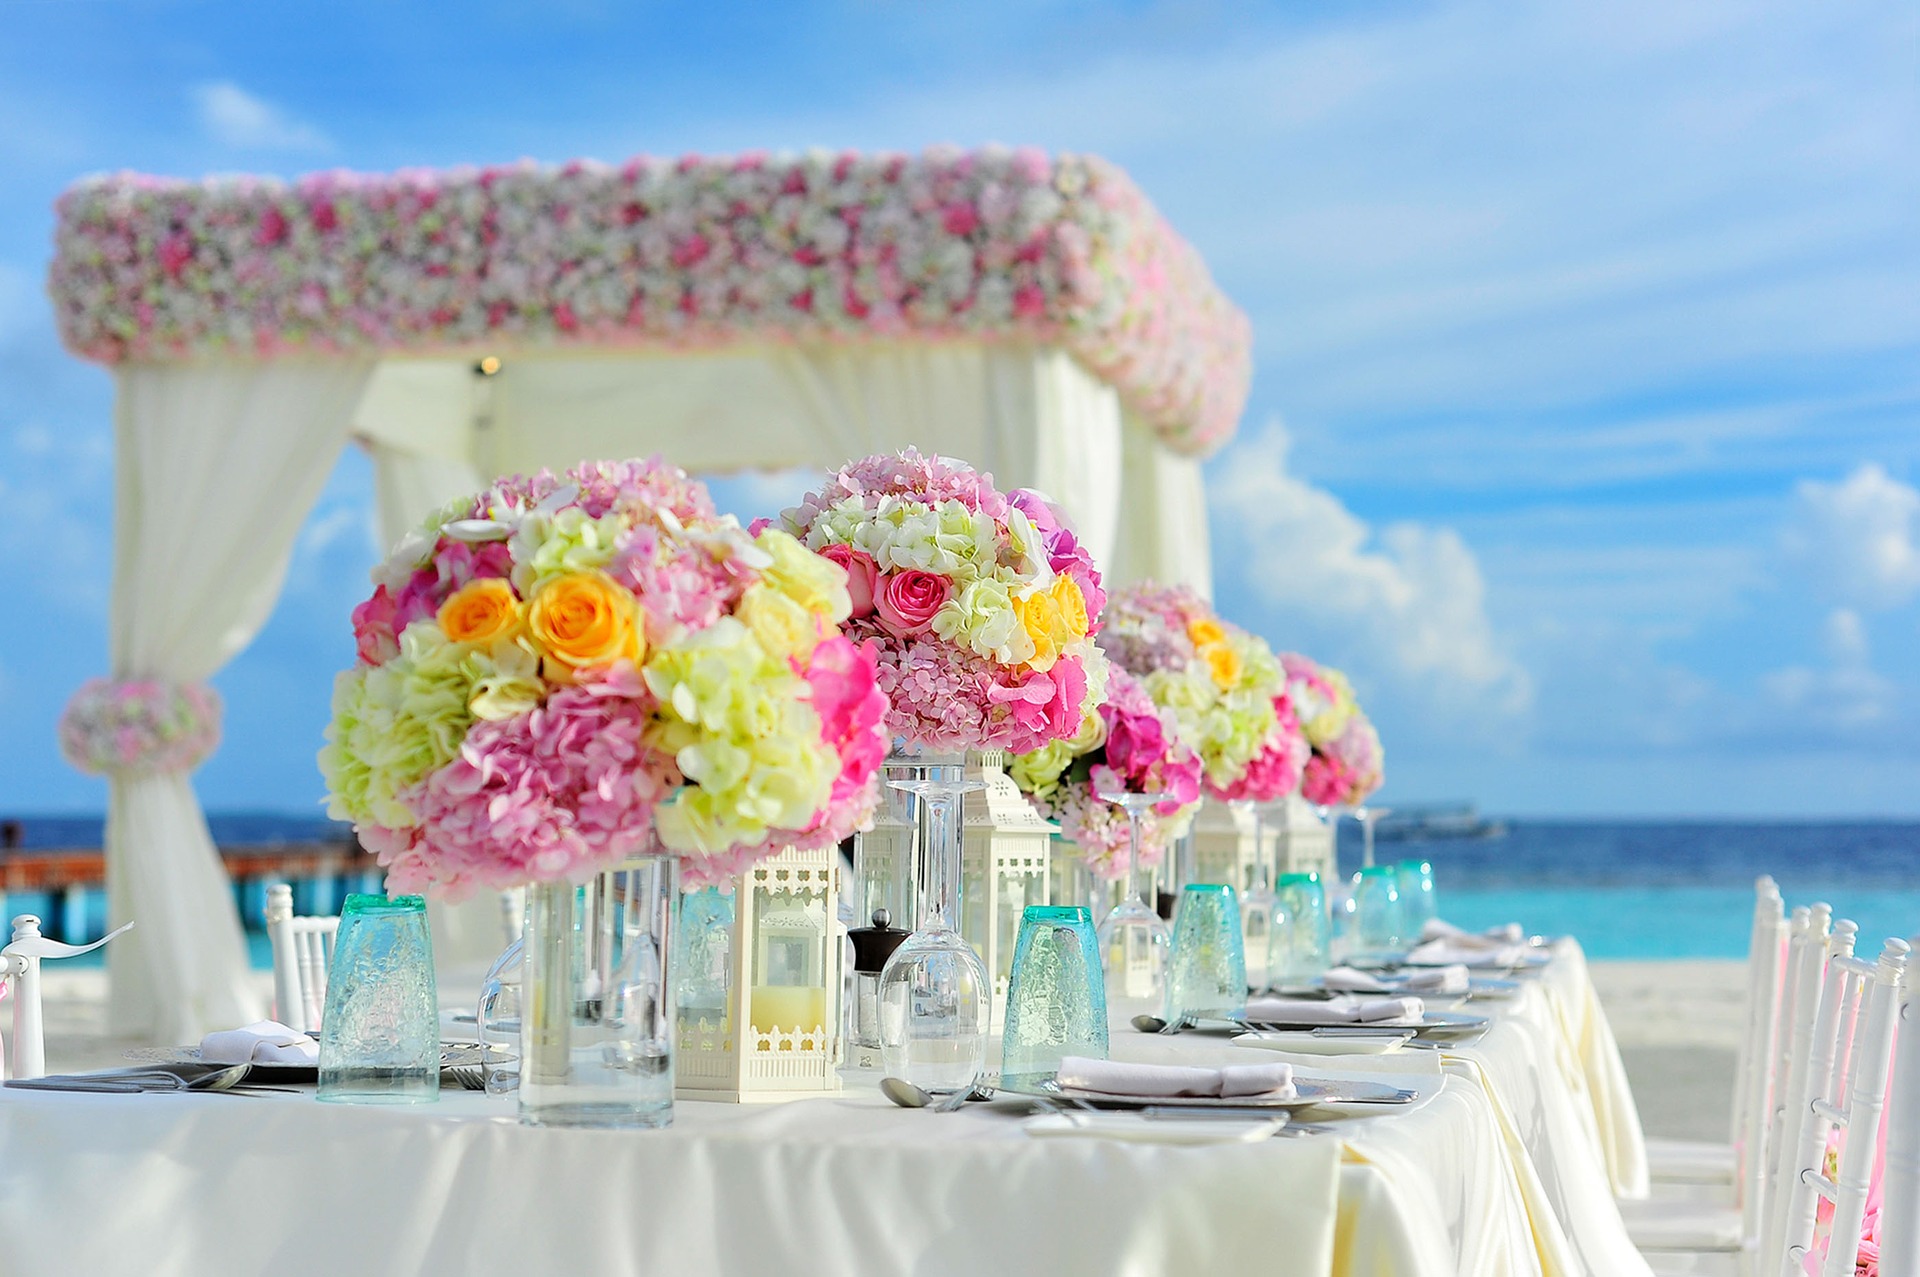 Wedding setting on a beach